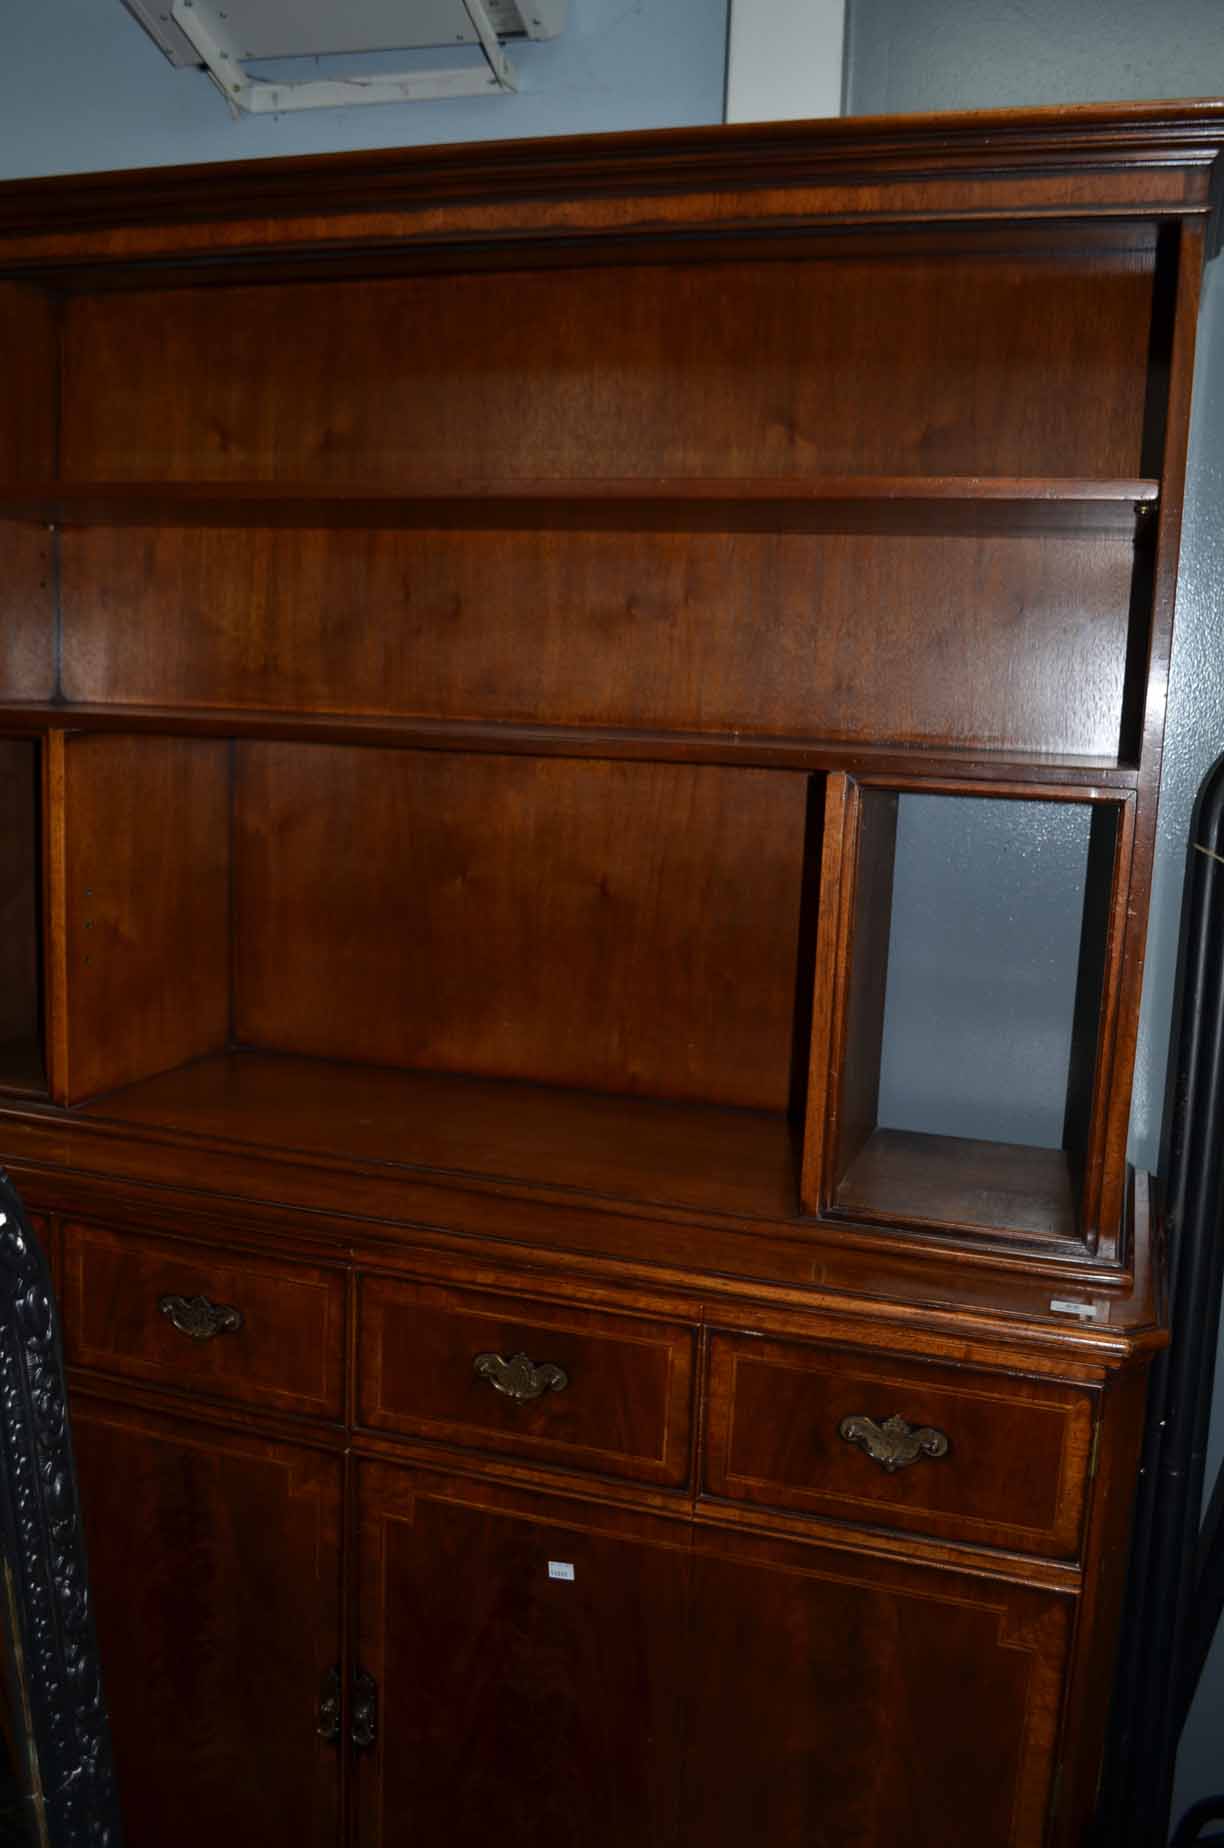 Mahogany bookcase cabinet